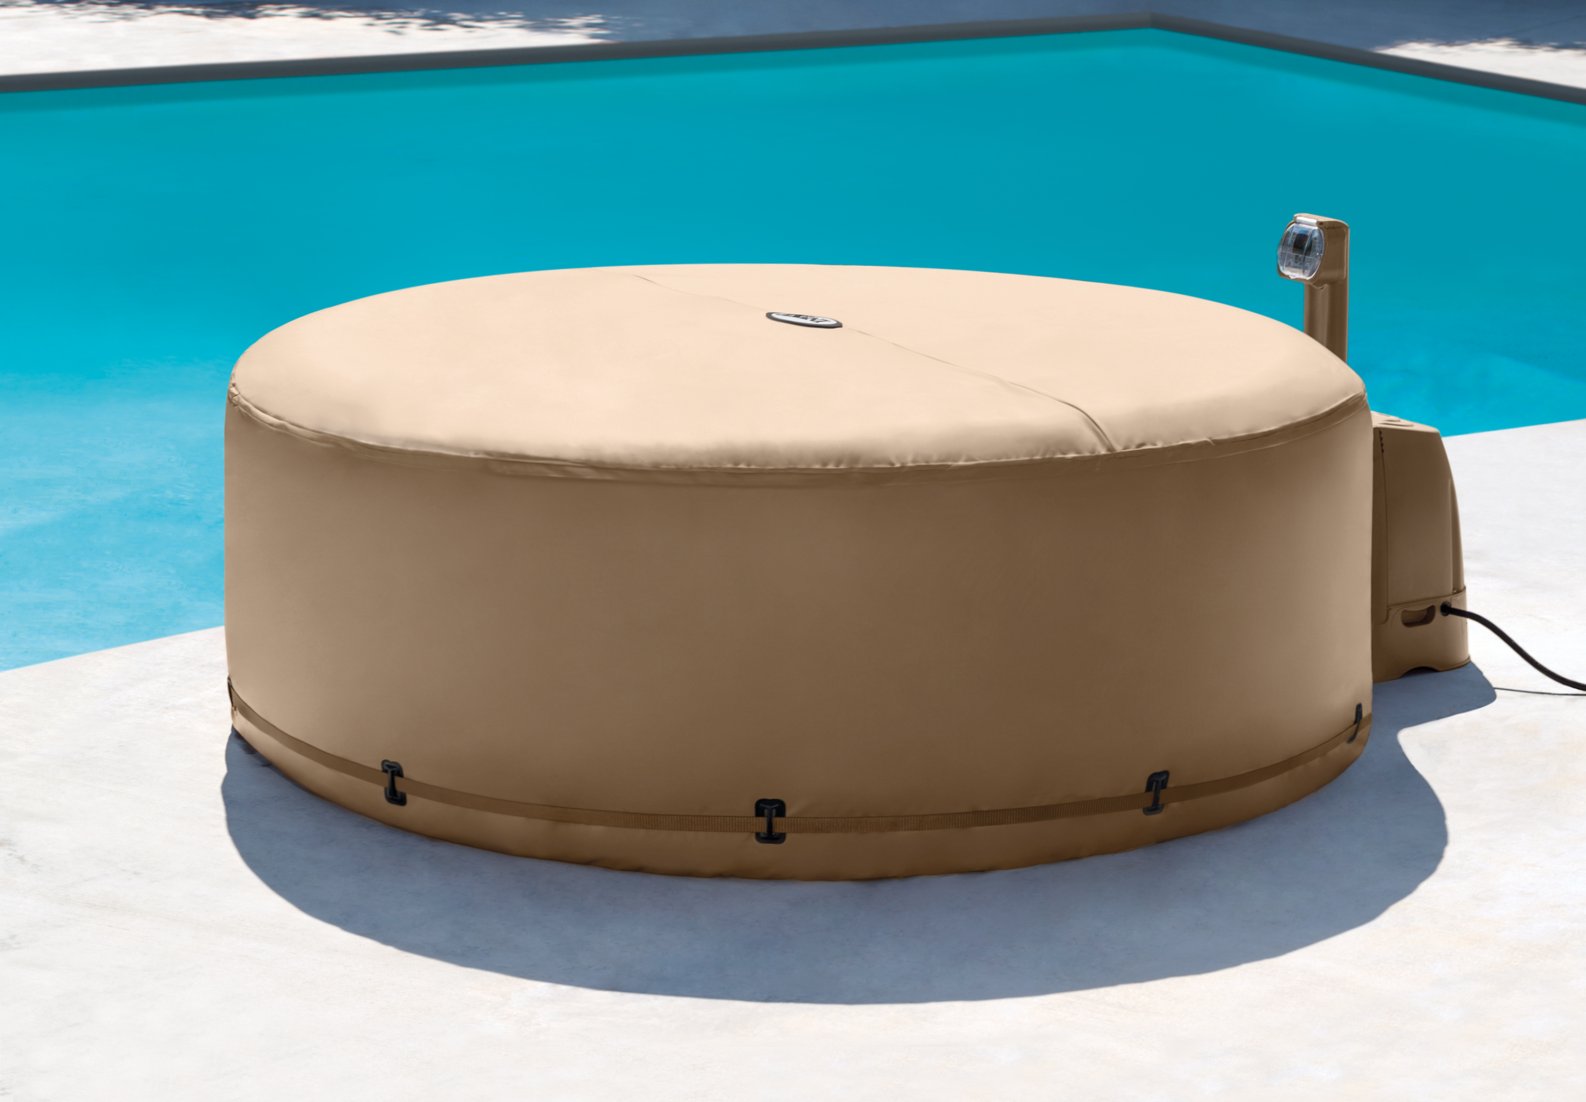 Покрытие теплосберегающее для СПА-бассейнов, Intex 28523